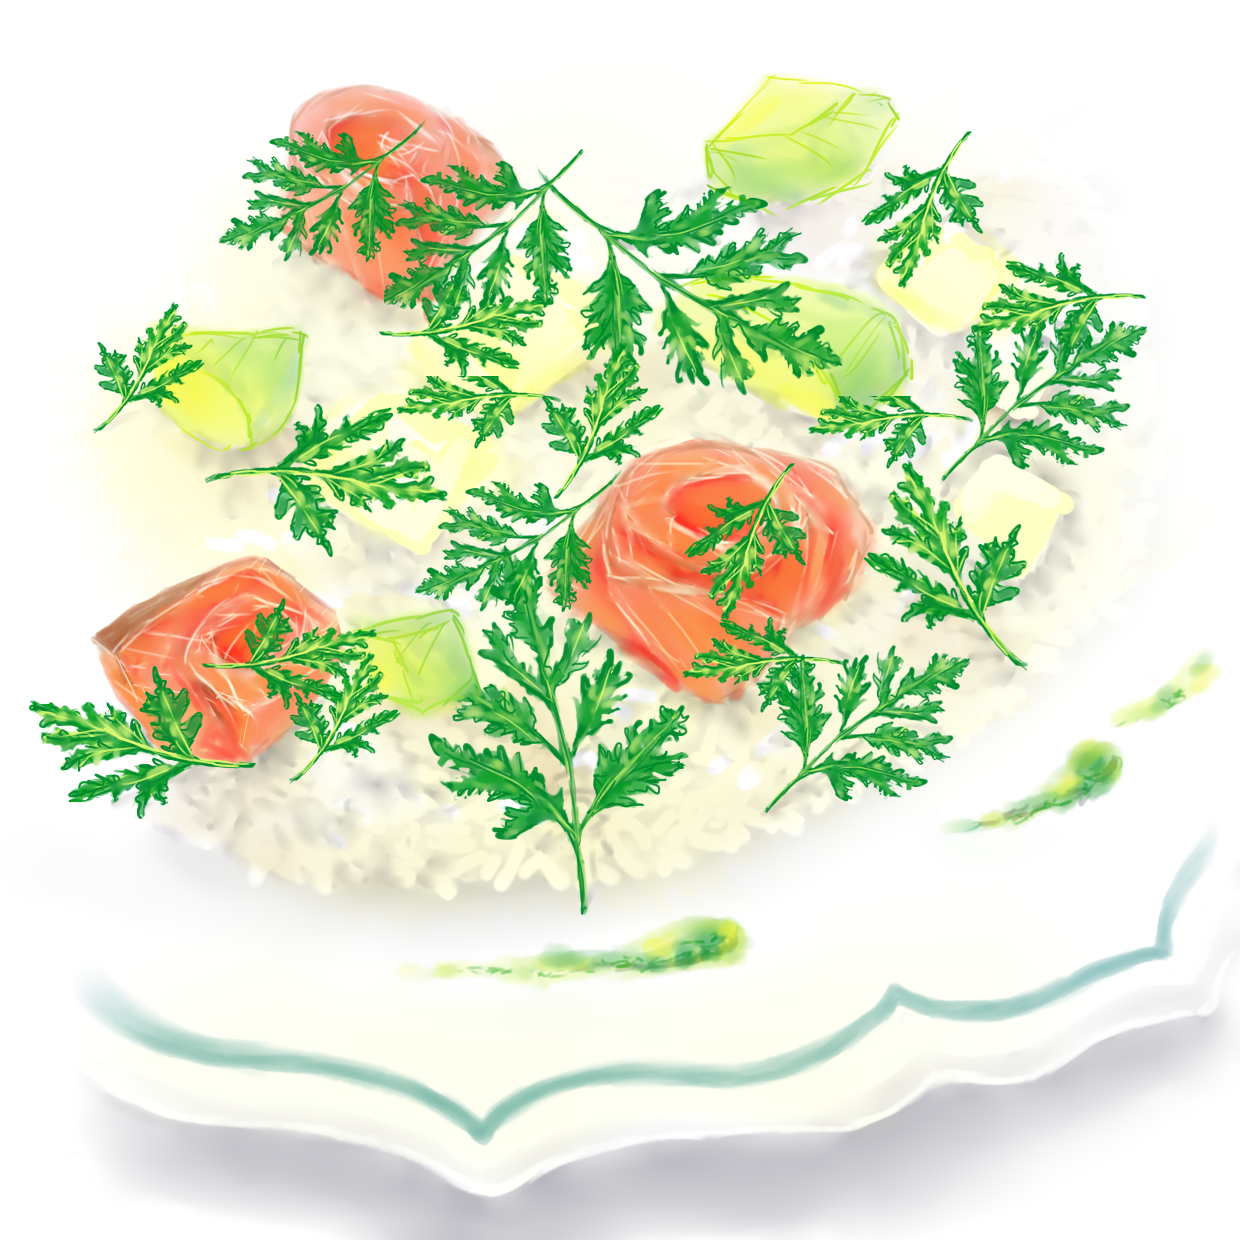 サーモンとアボカドの具にチャービルの葉を散らし、洋皿に盛りつけたハーブちらし寿司のイラスト。